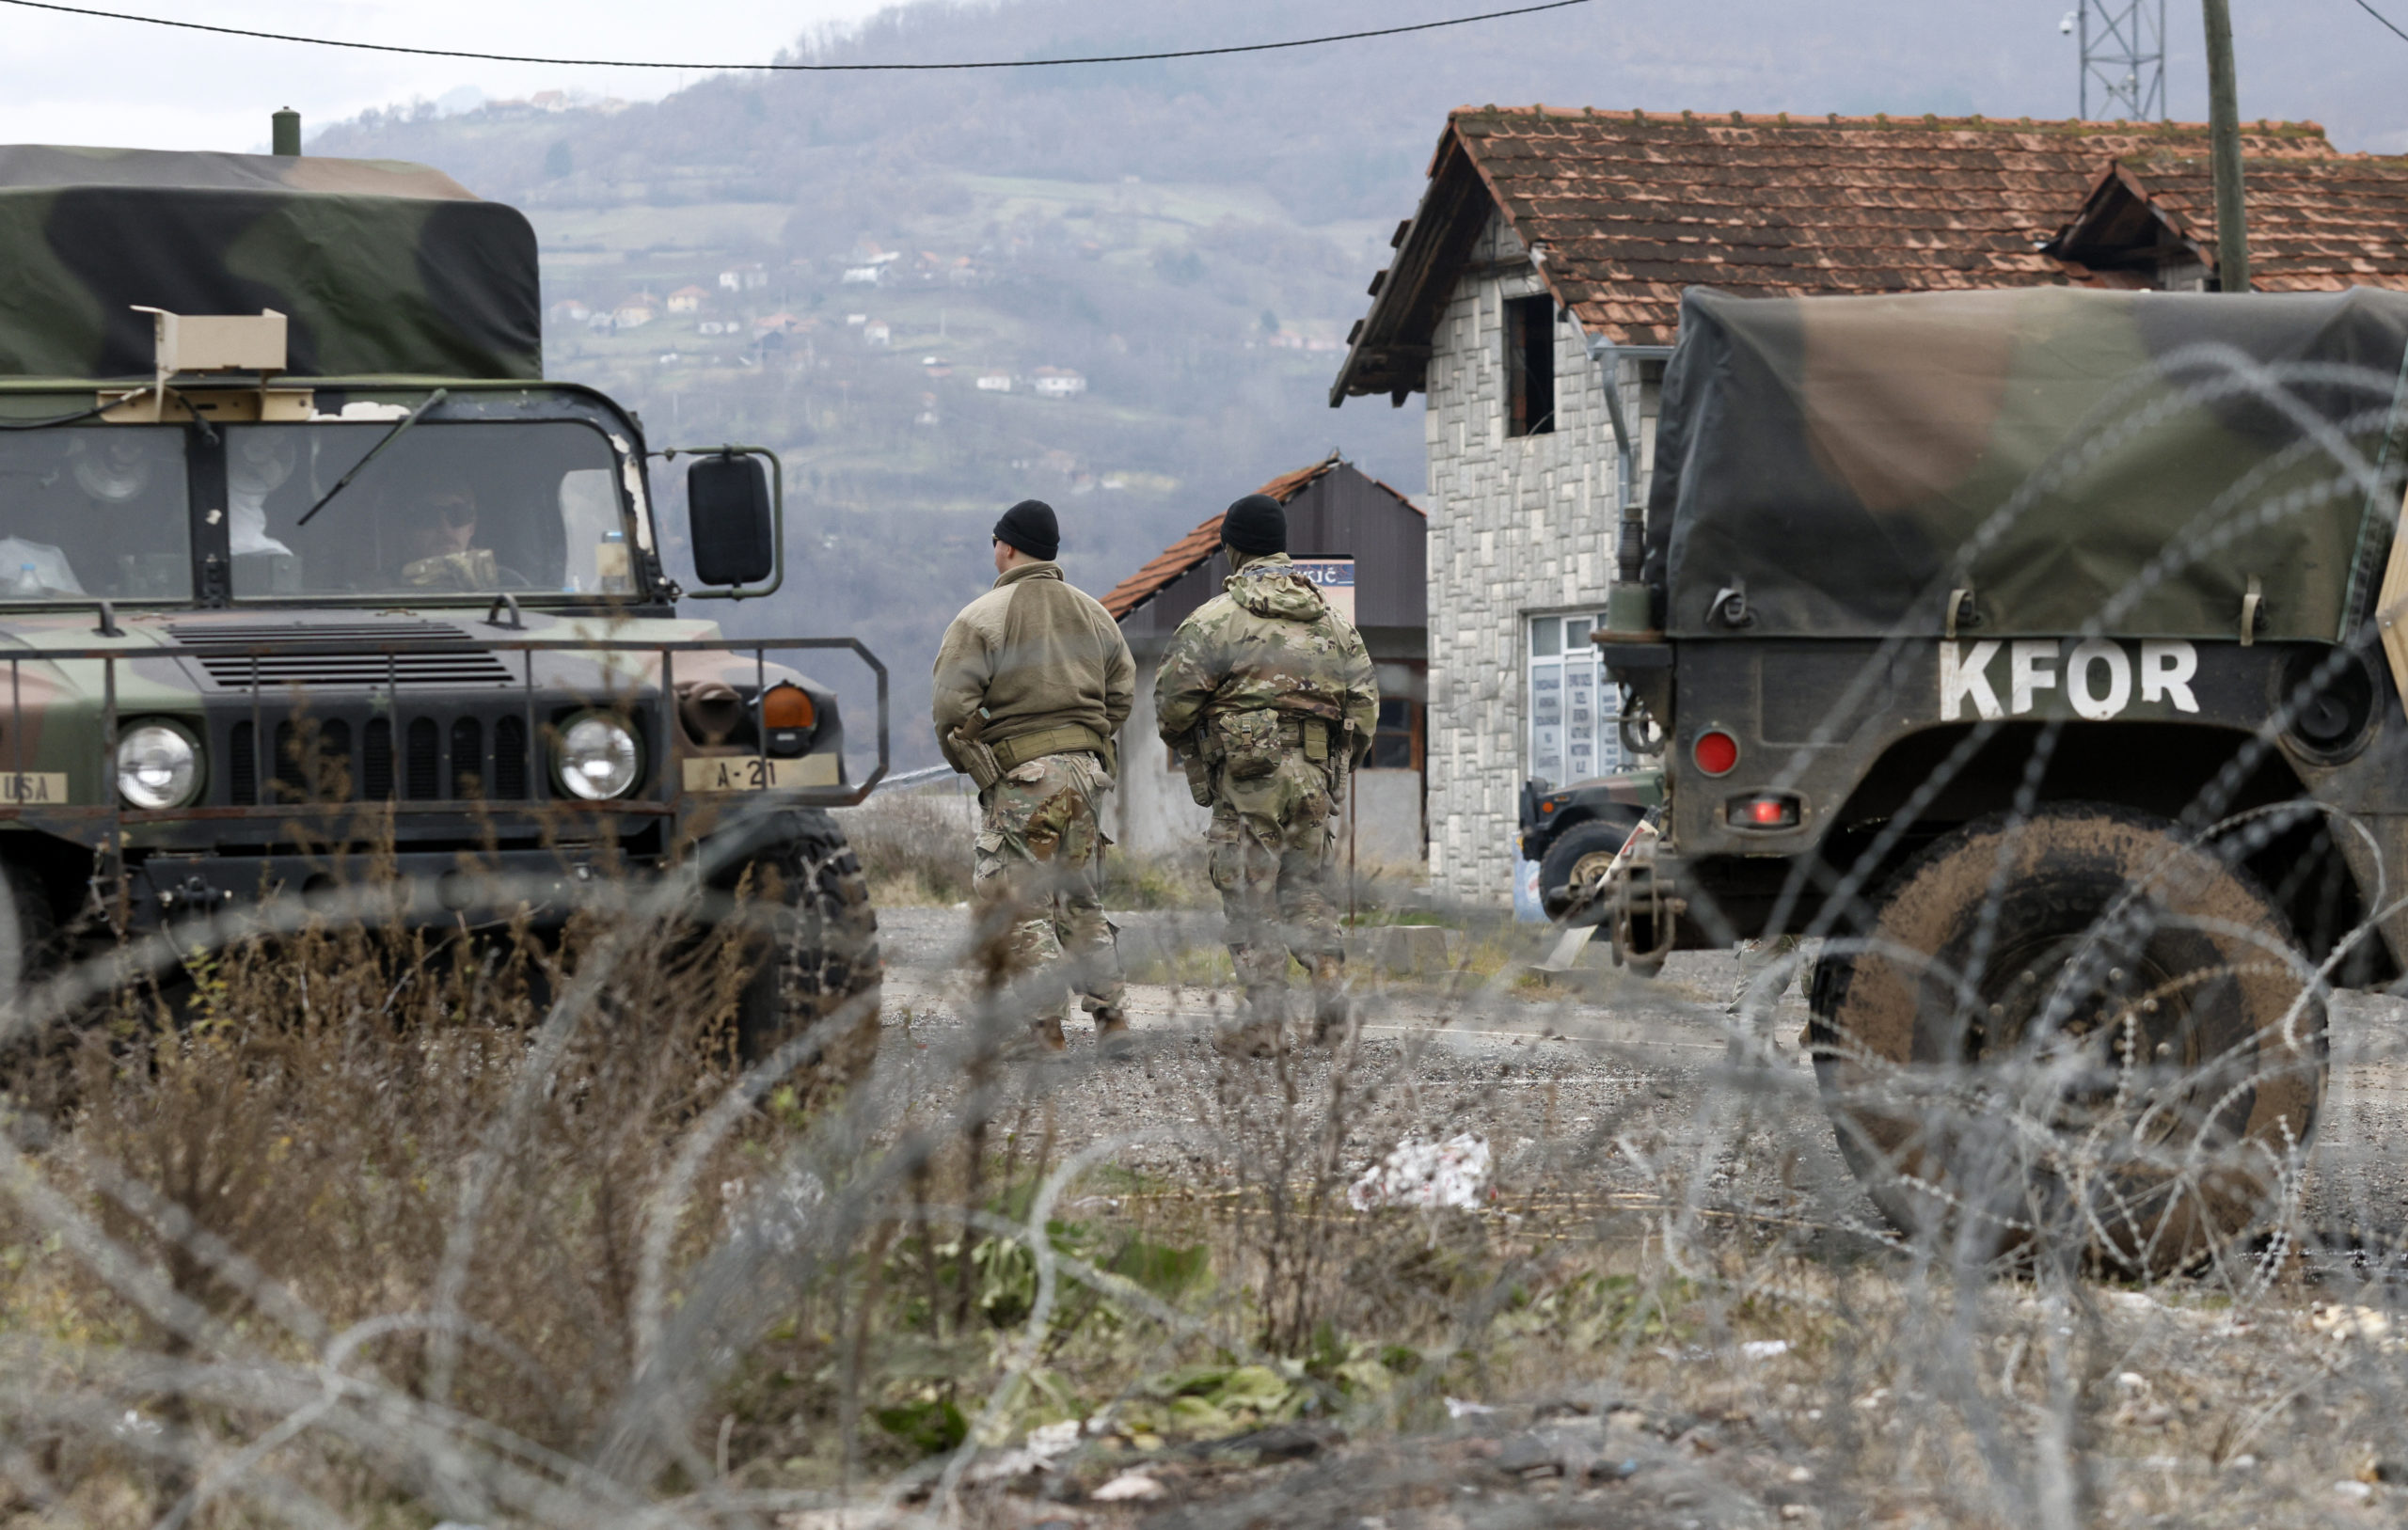 Ν.Δένδιας για Κόσοβο και οι δηλώσεις προς Πρίστινα-Βελιγράδι: «Αμοιβαίως συμπεφωνημένη επίλυση ζητημάτων»